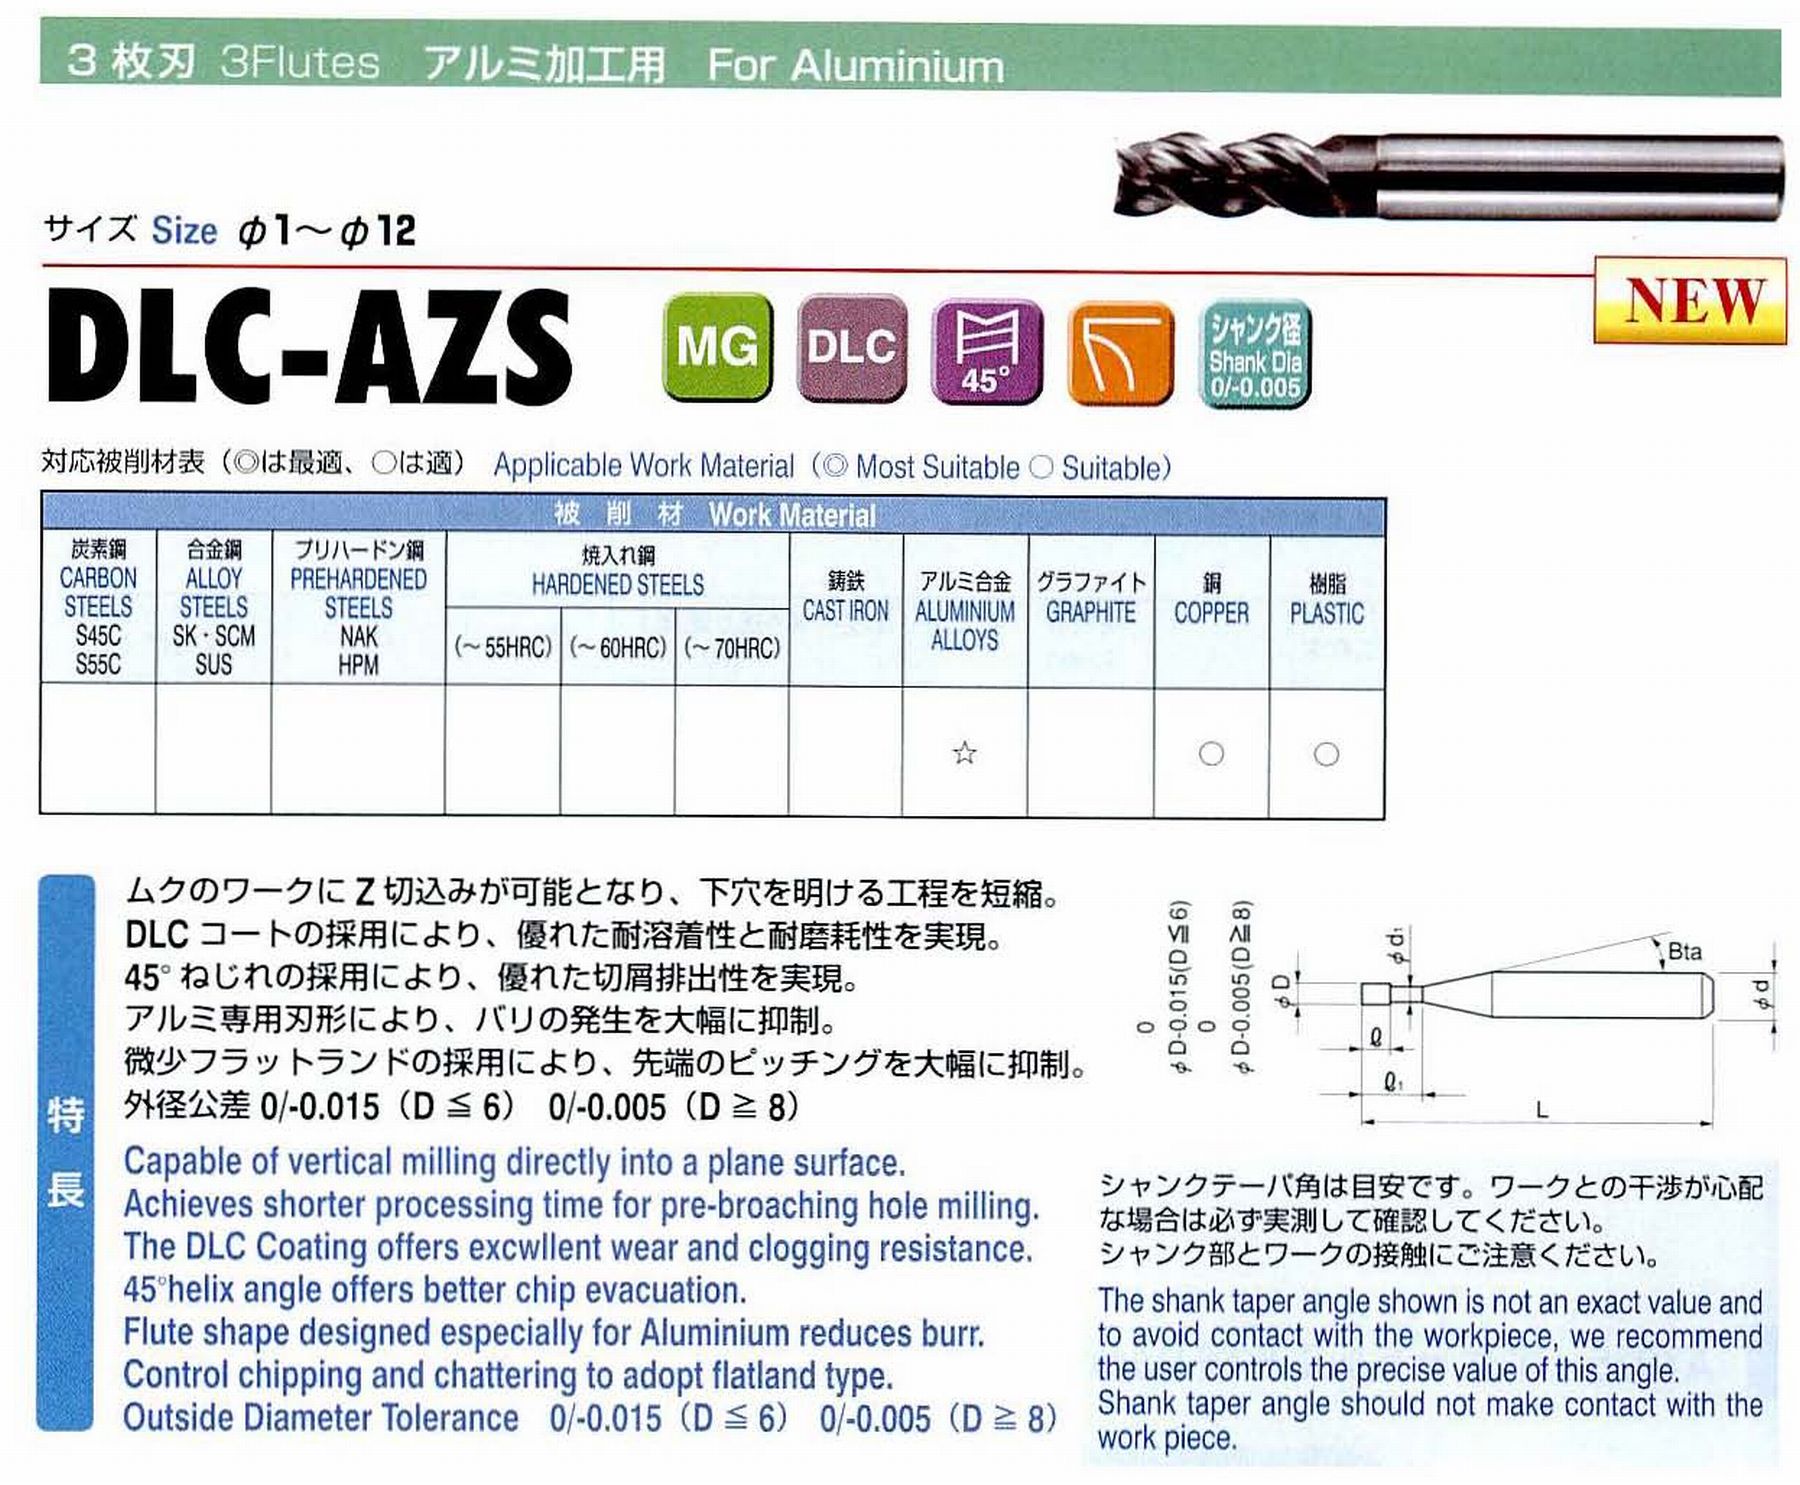 ユニオンツール 3枚刃 DLC-AZS3010-030 外径1 有効長3 刃長2 首径0.95 シャンクテーパ角16° 全長60 シャンク径4